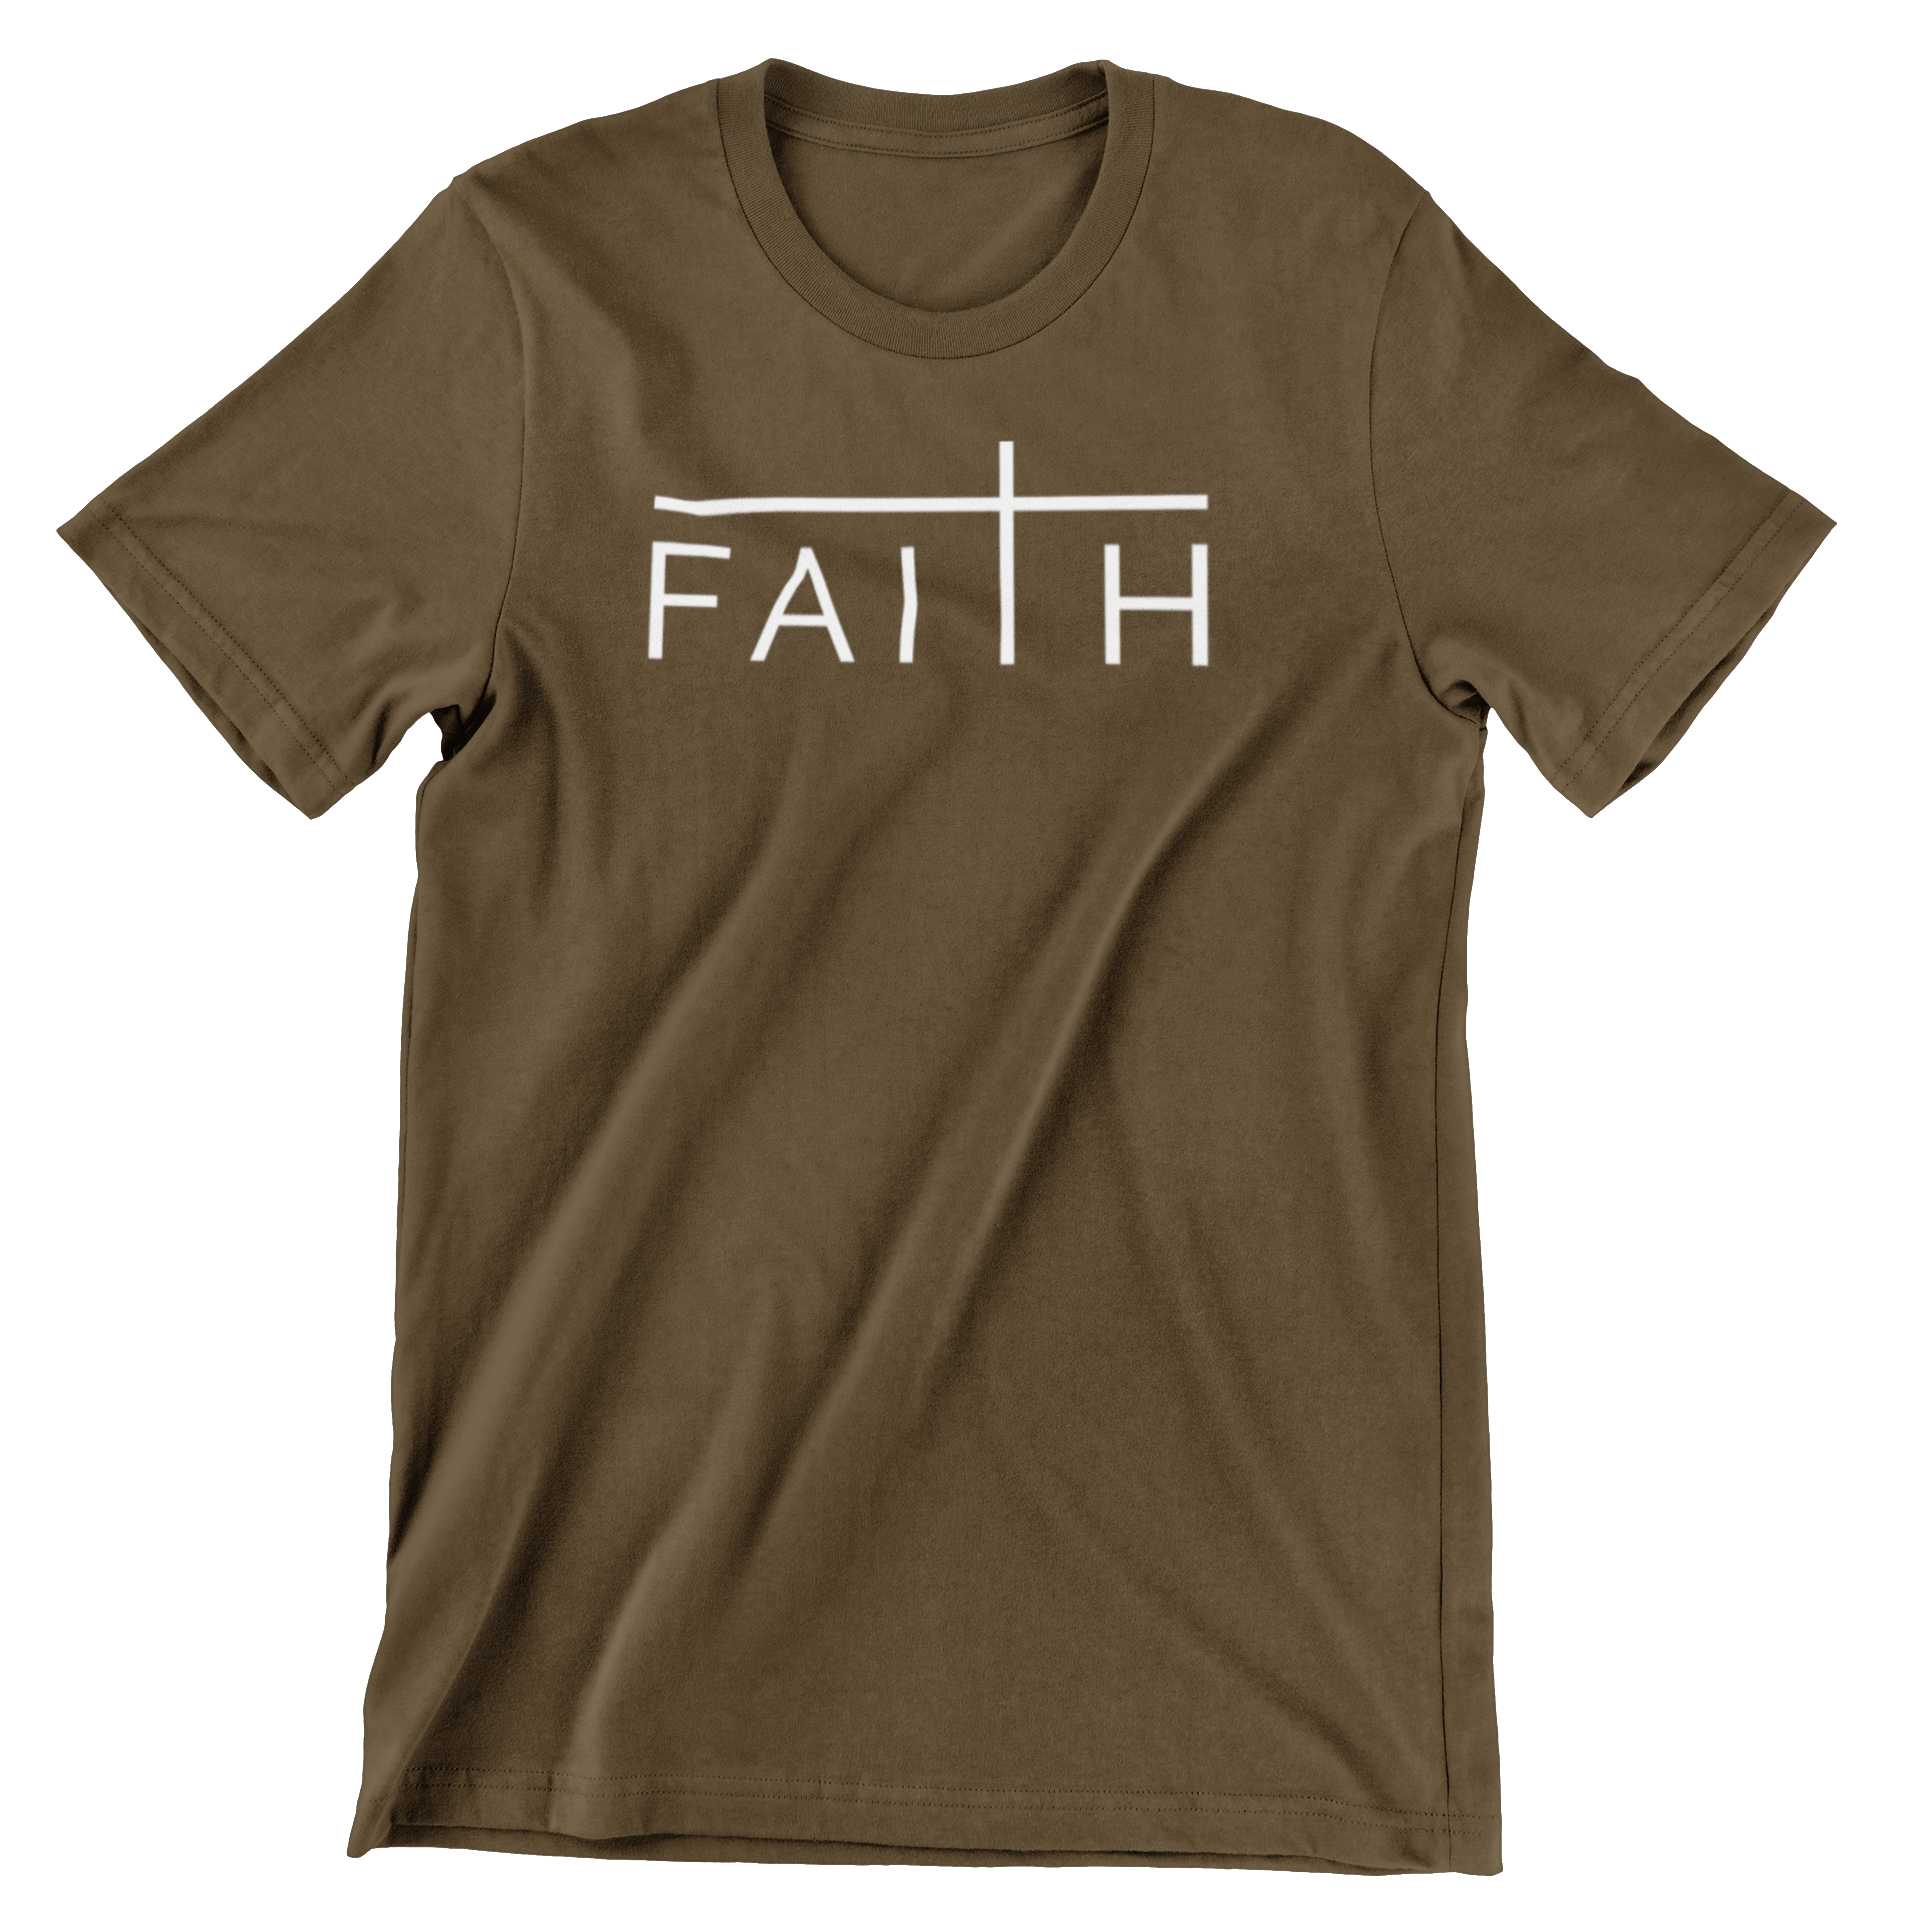 FAITH CHRISTIAN T-SHIRT- CHOCOLATE